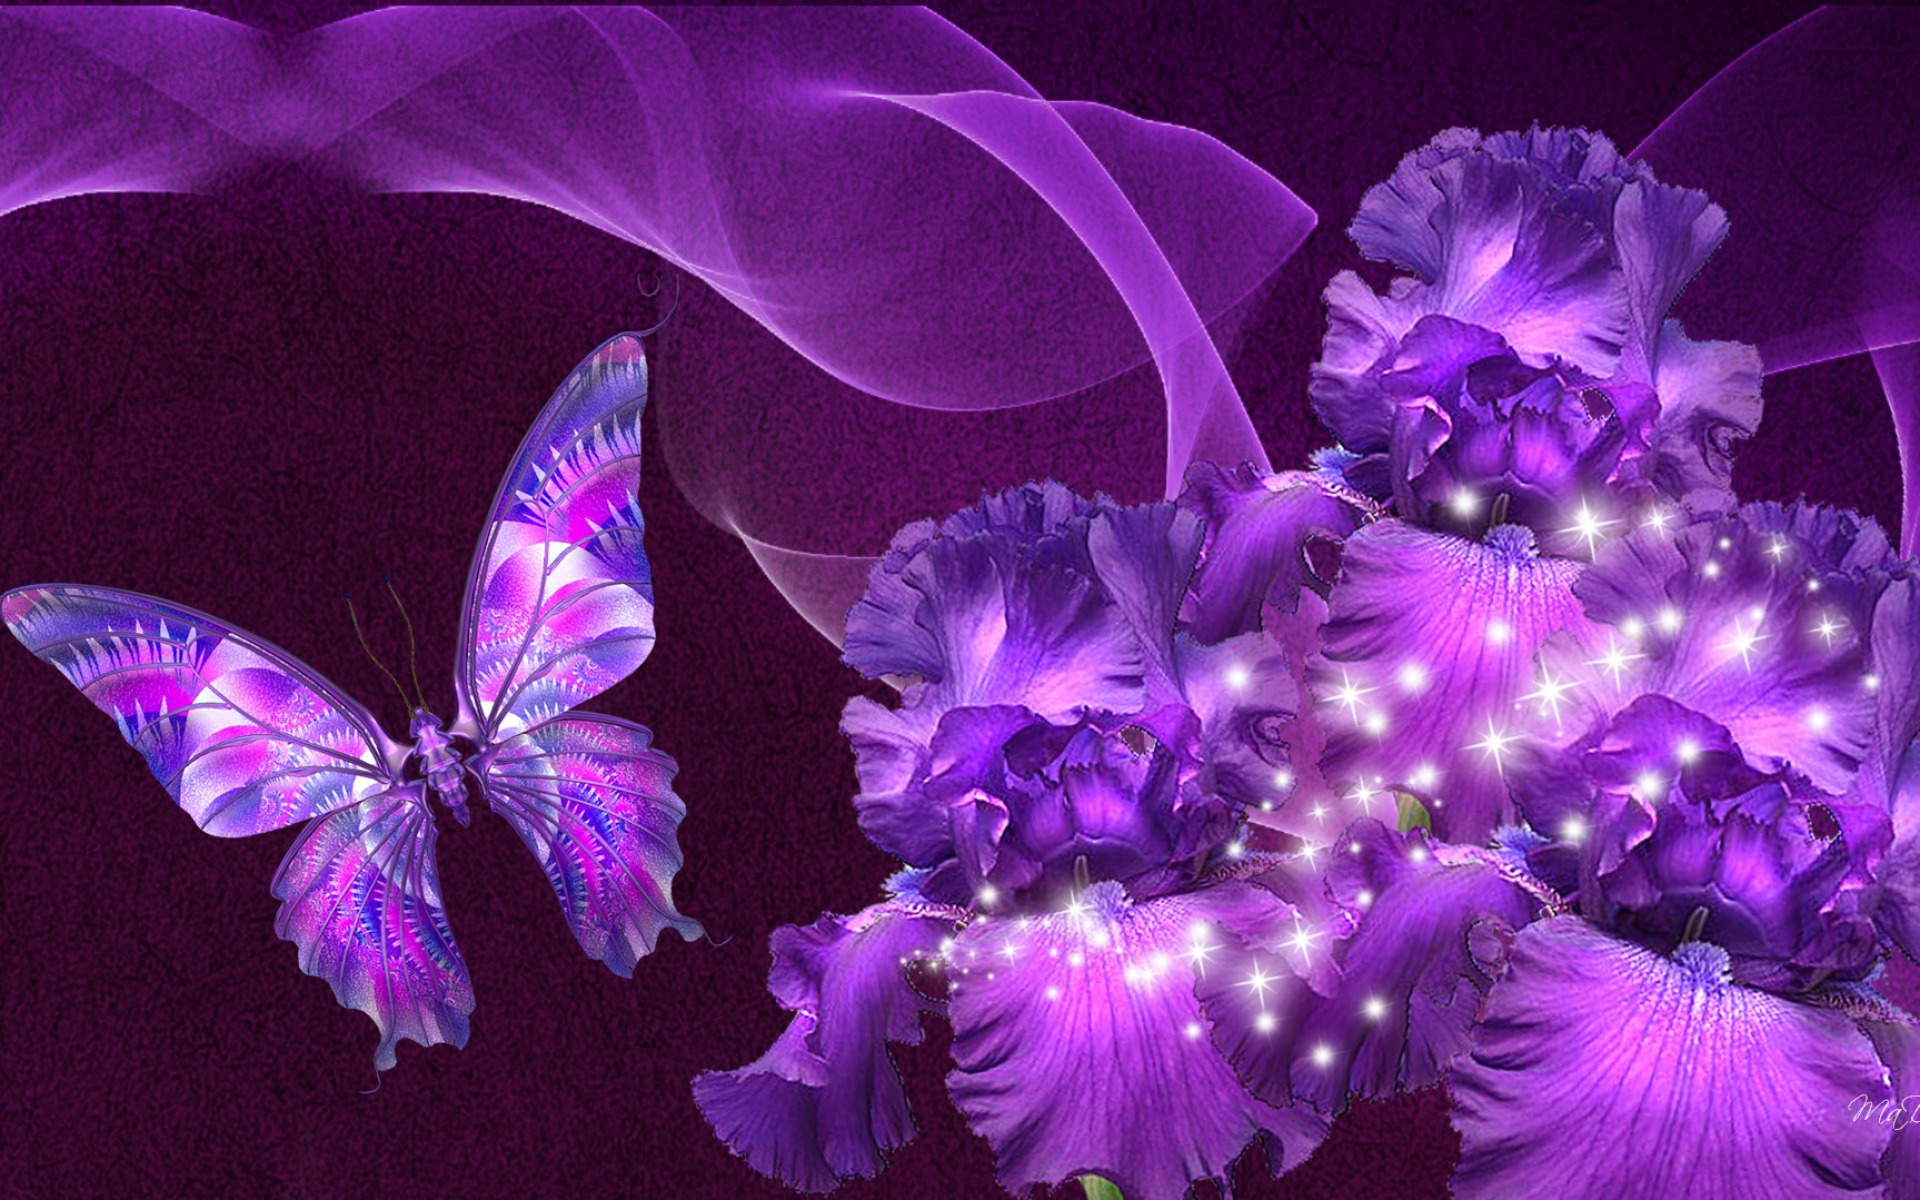 Скачать обои бесплатно Цветок, Бабочка, Блестки, Пурпурный, Художественные картинка на рабочий стол ПК